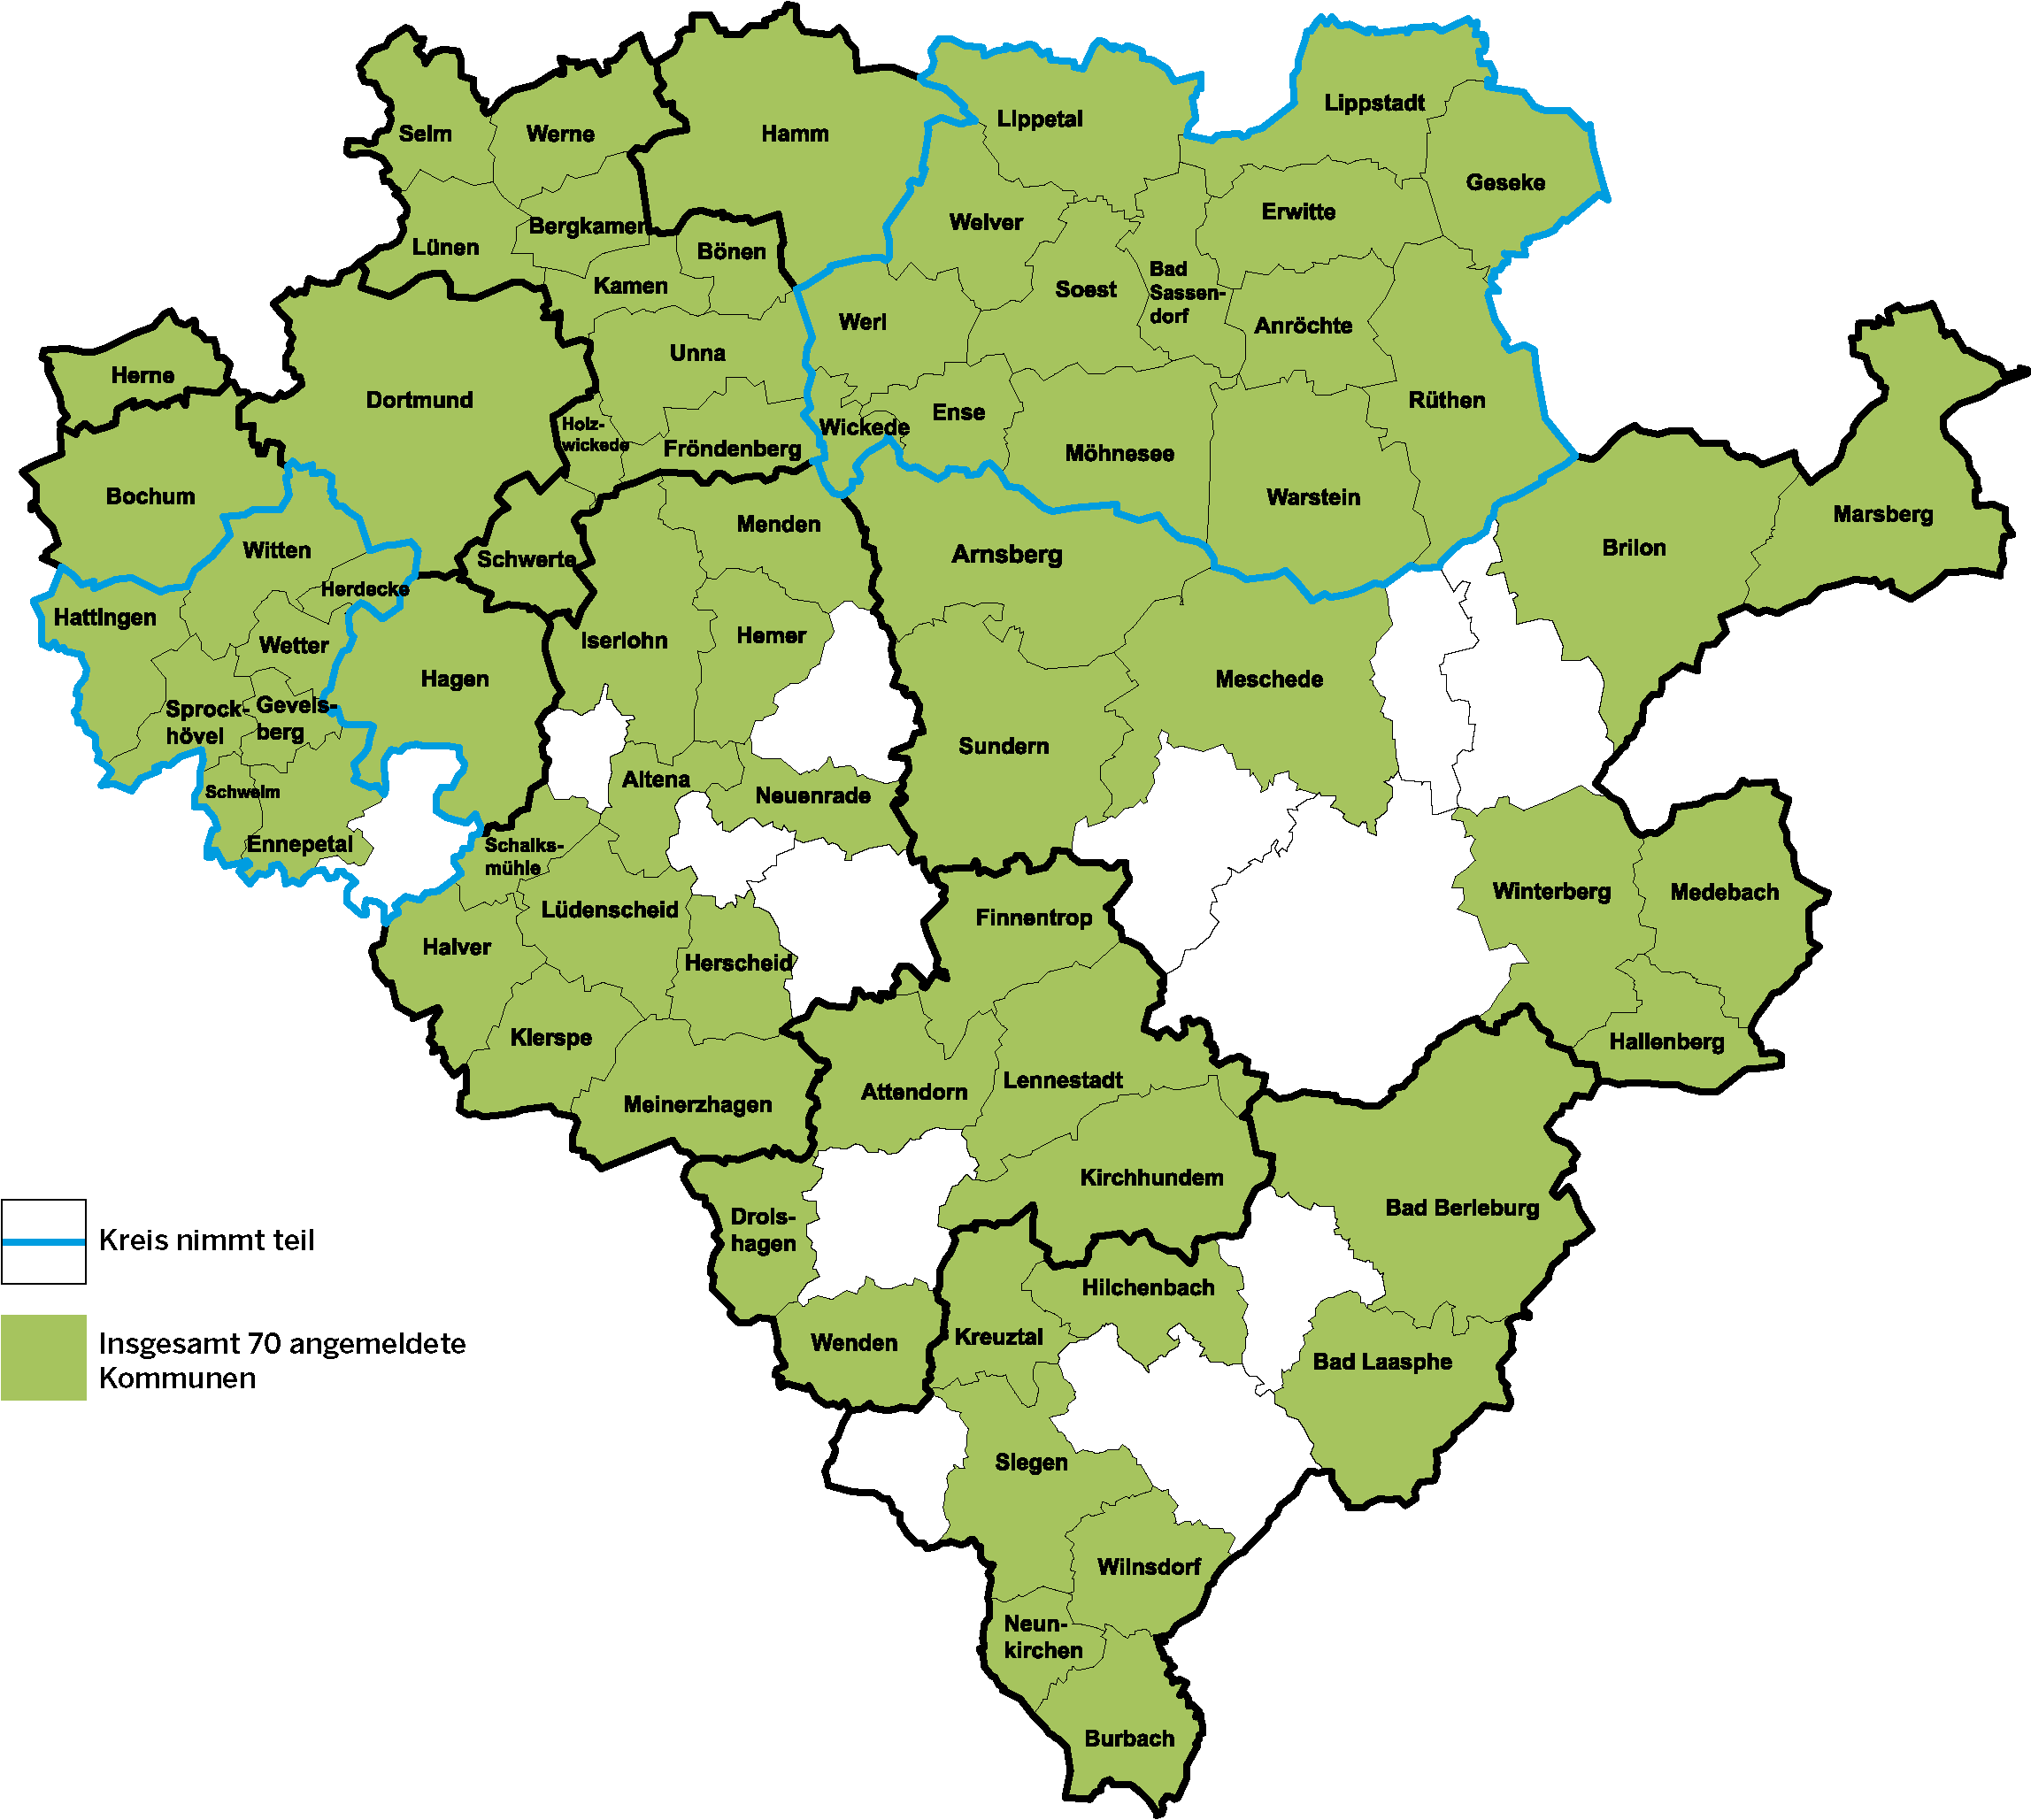 Teilnehmende Kommunen an der Klimakampagne im Regierungsbezirk Arnsberg